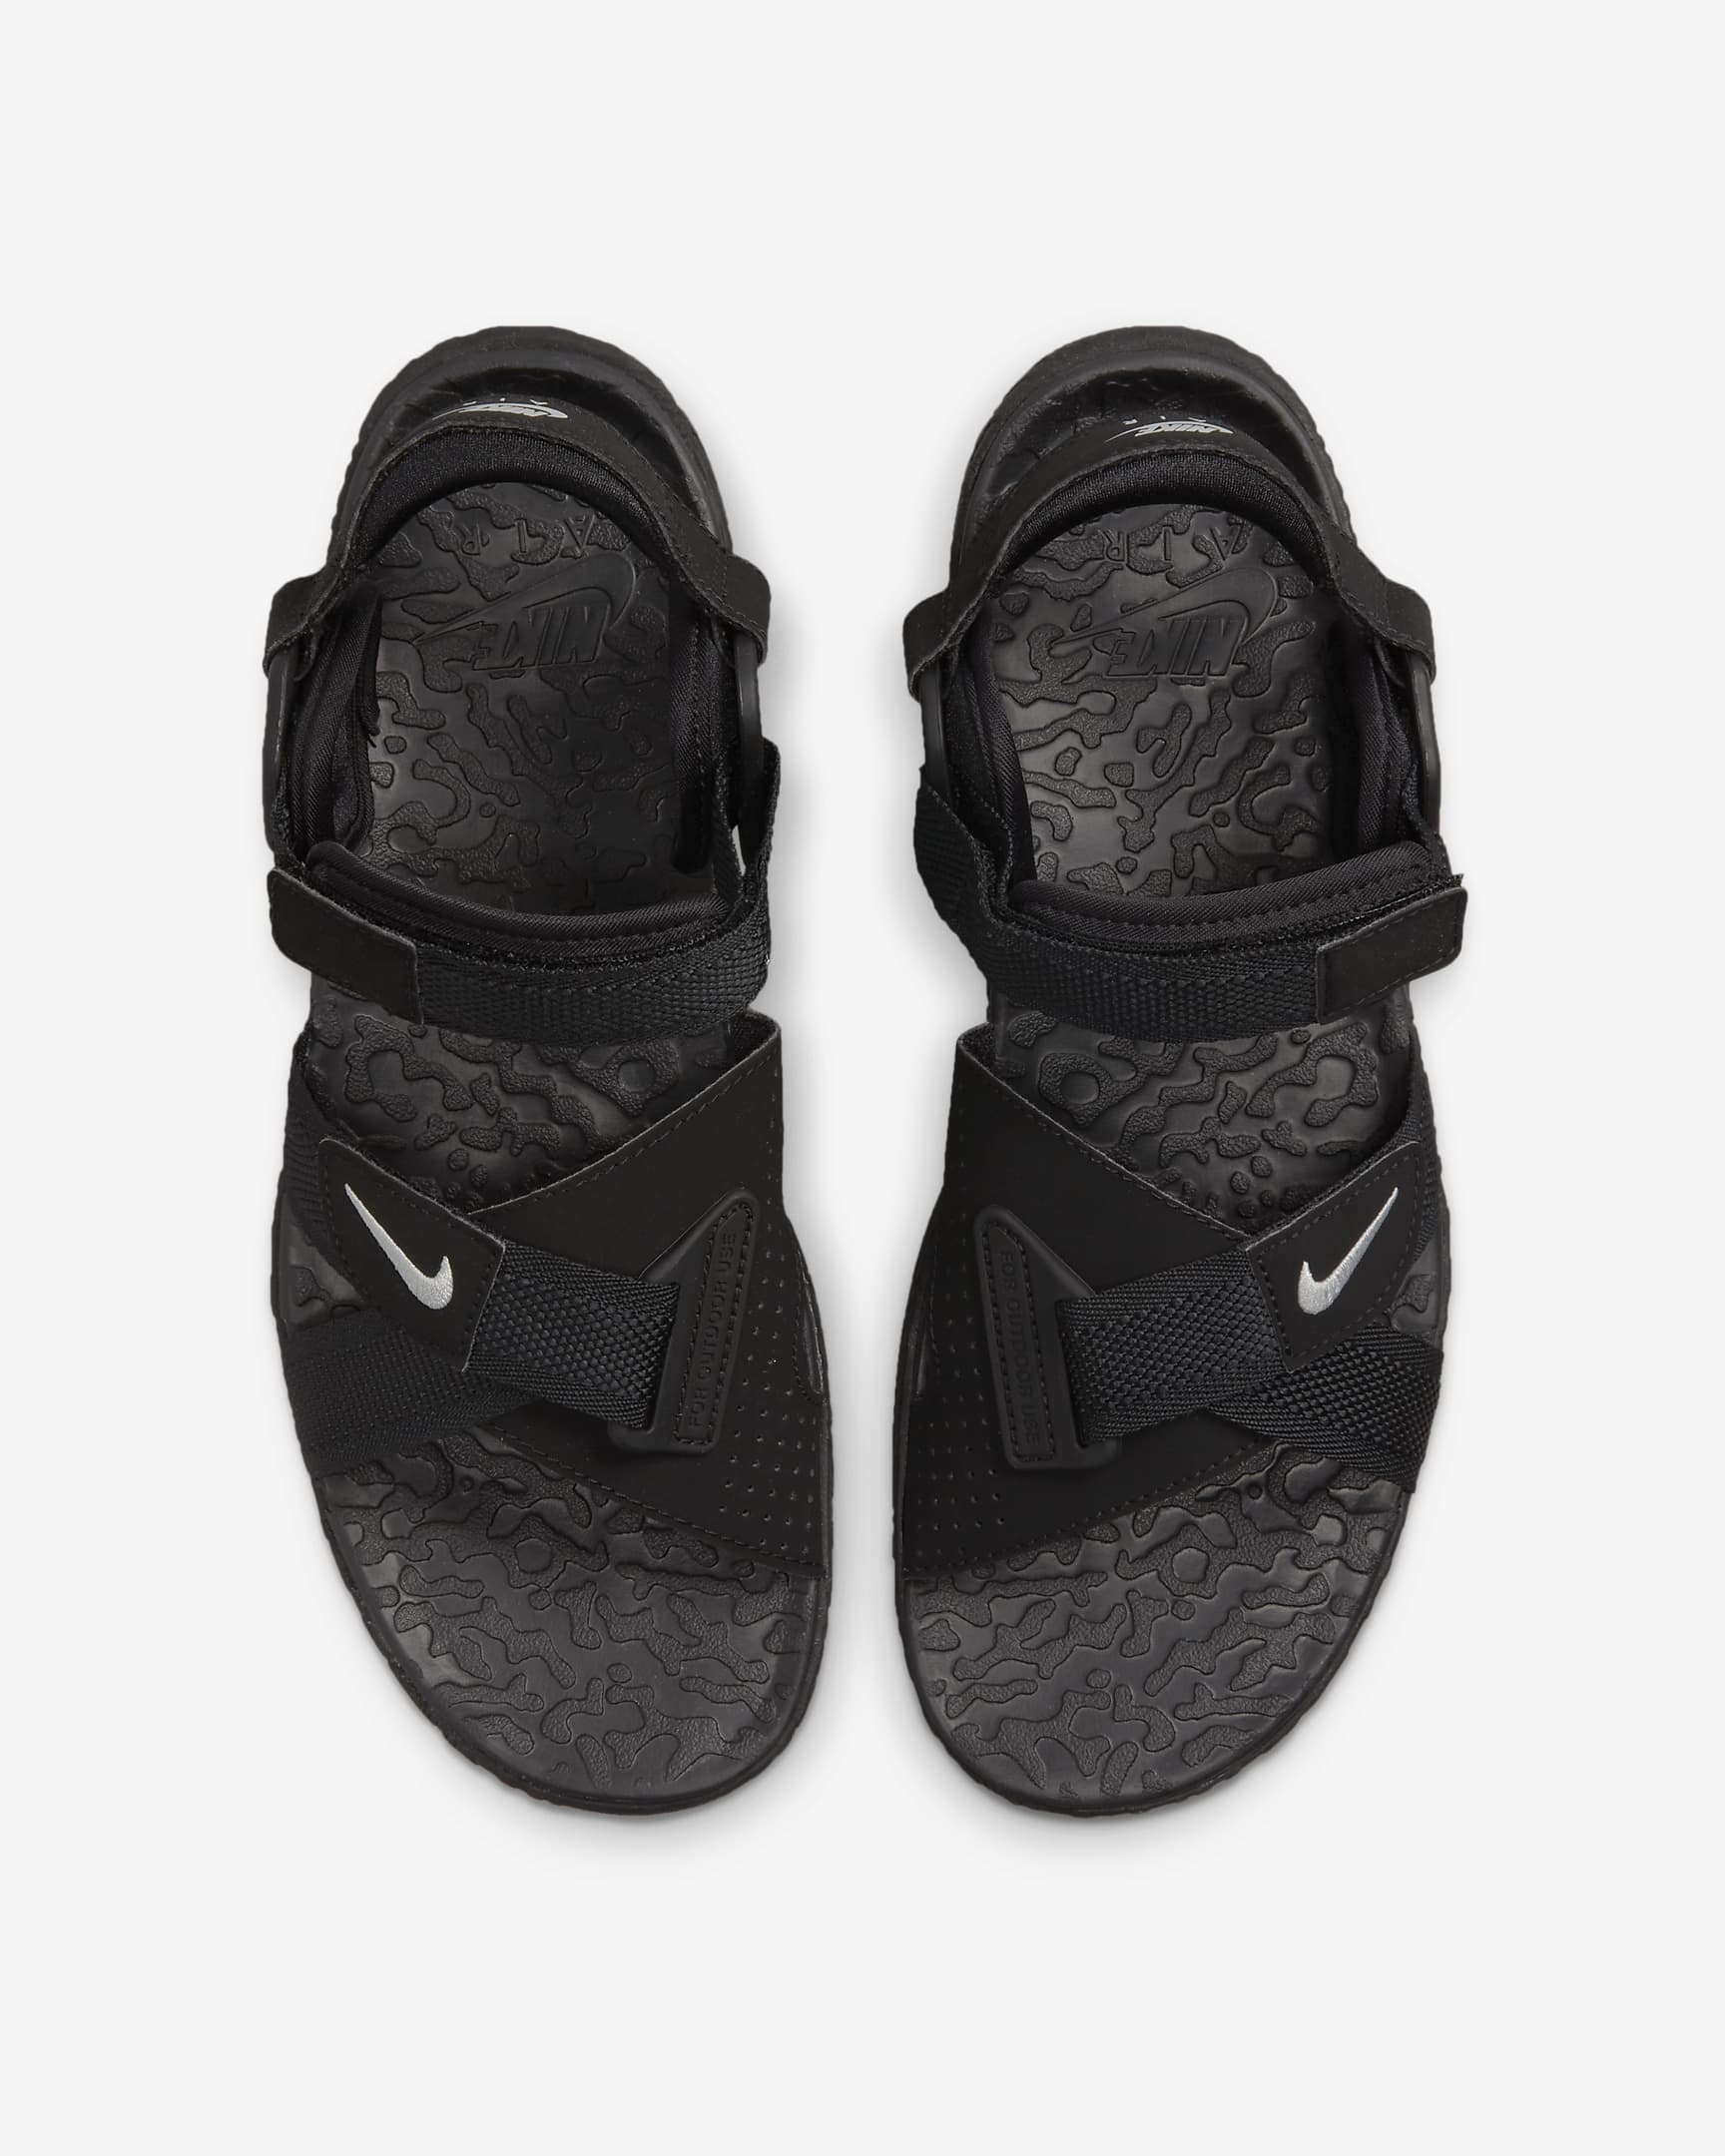 ACG Air Deschutz+ Sandals. Nike NZ